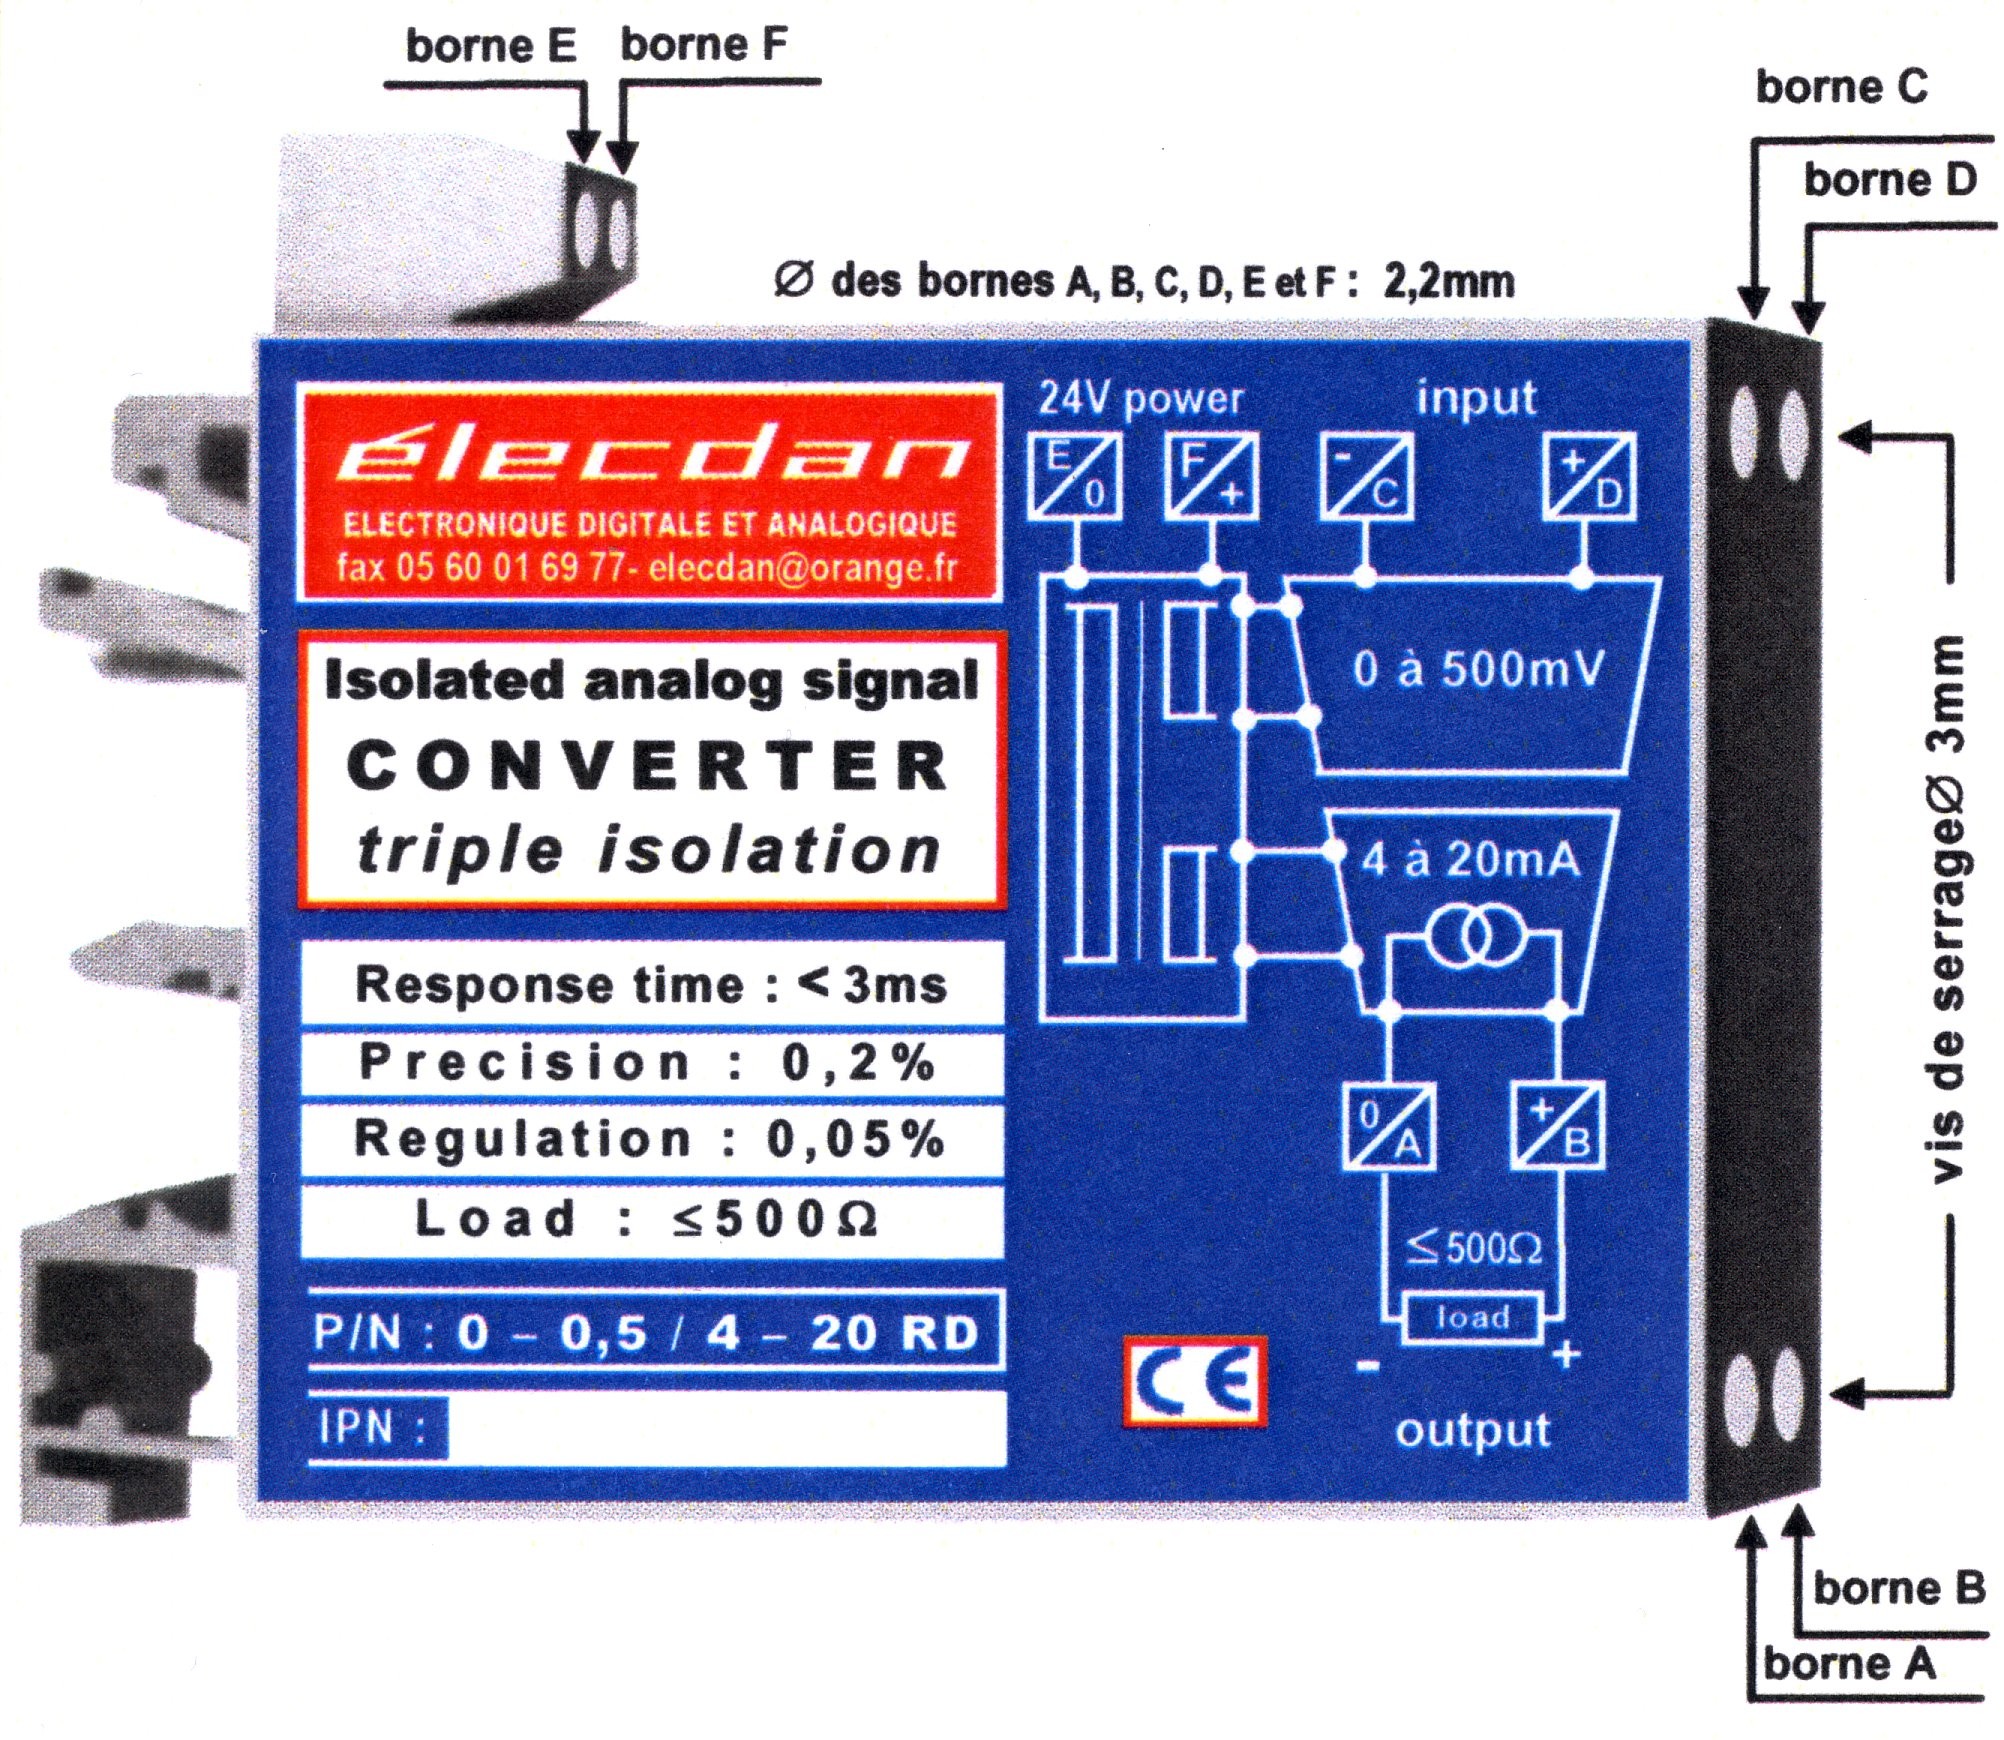 Boîtier pour RAIL DIN : 66 x 53 x 12.5 mm - Réf. 0-0.5 / 4-20 RD